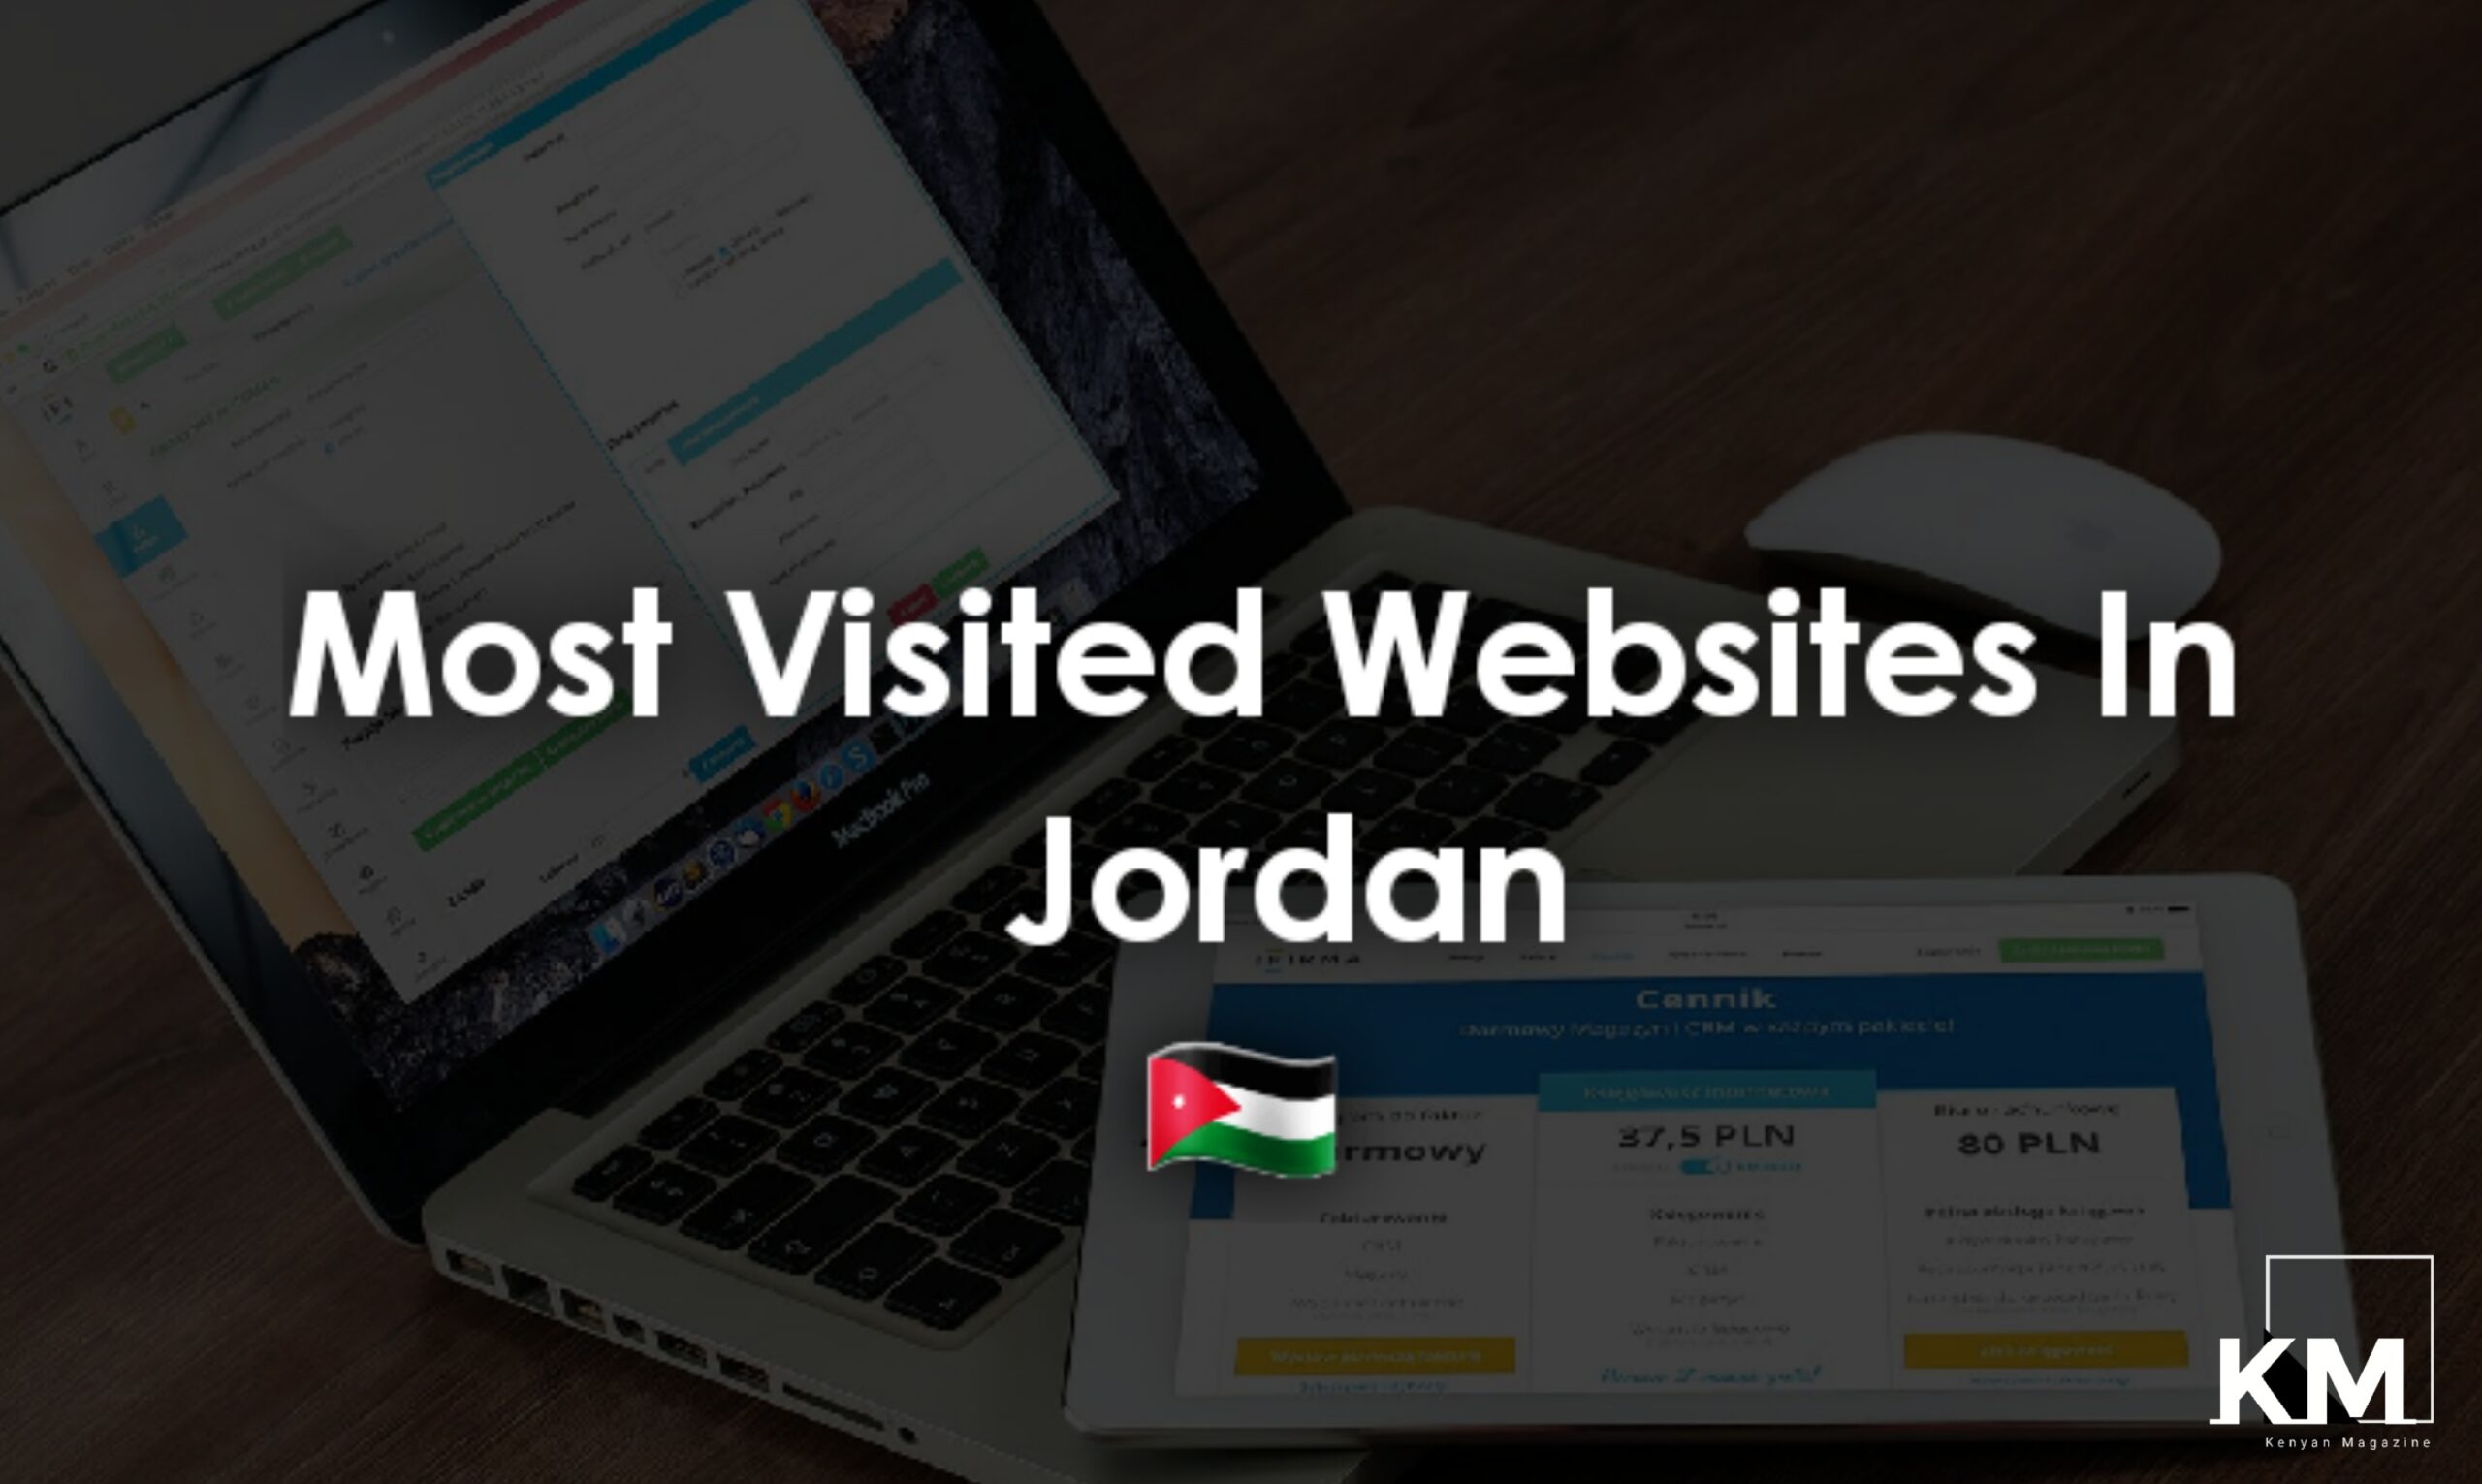 Most visited websites in Jordan